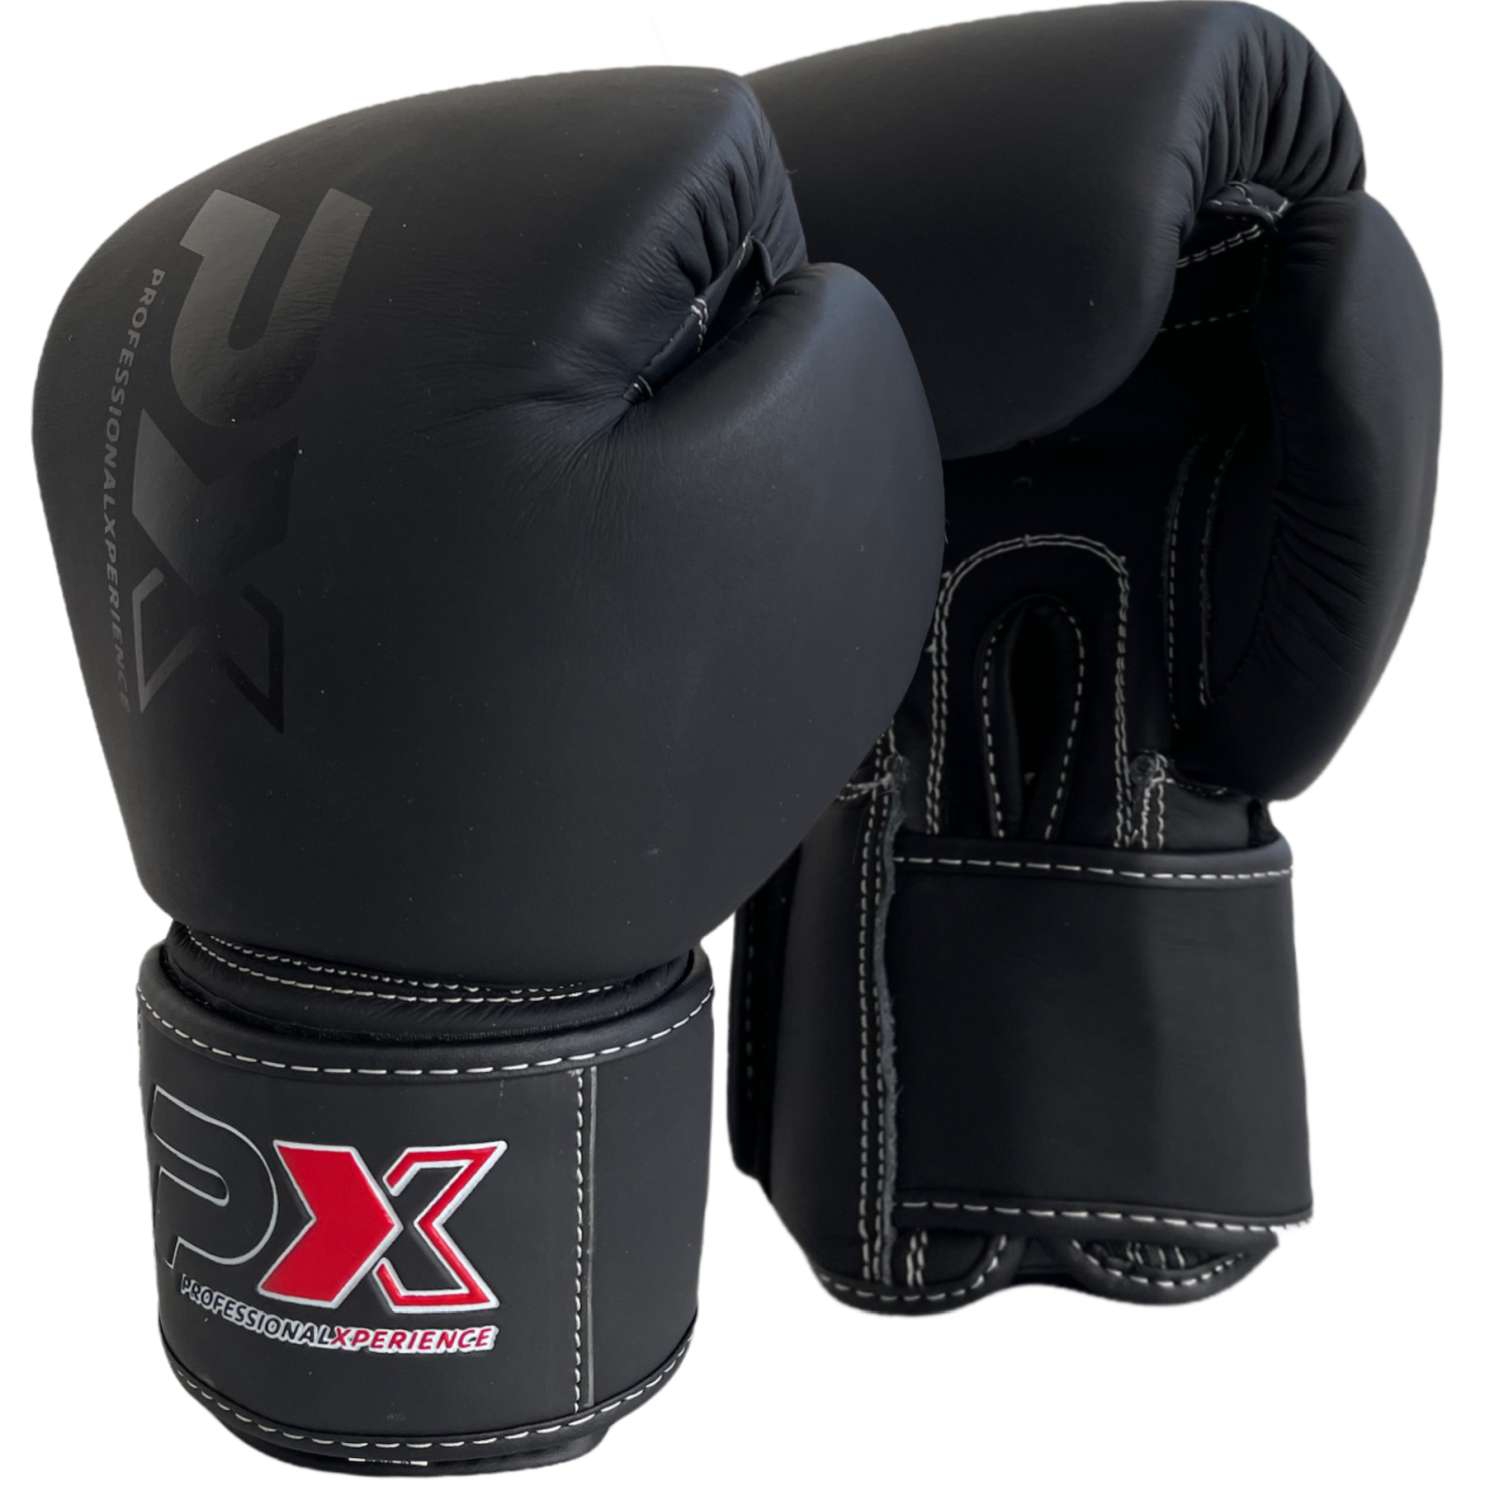 CONTEST Boxhandschuhe für den Wettkampf mit DBV Prüfmarke MMA Boxen Kickboxen 